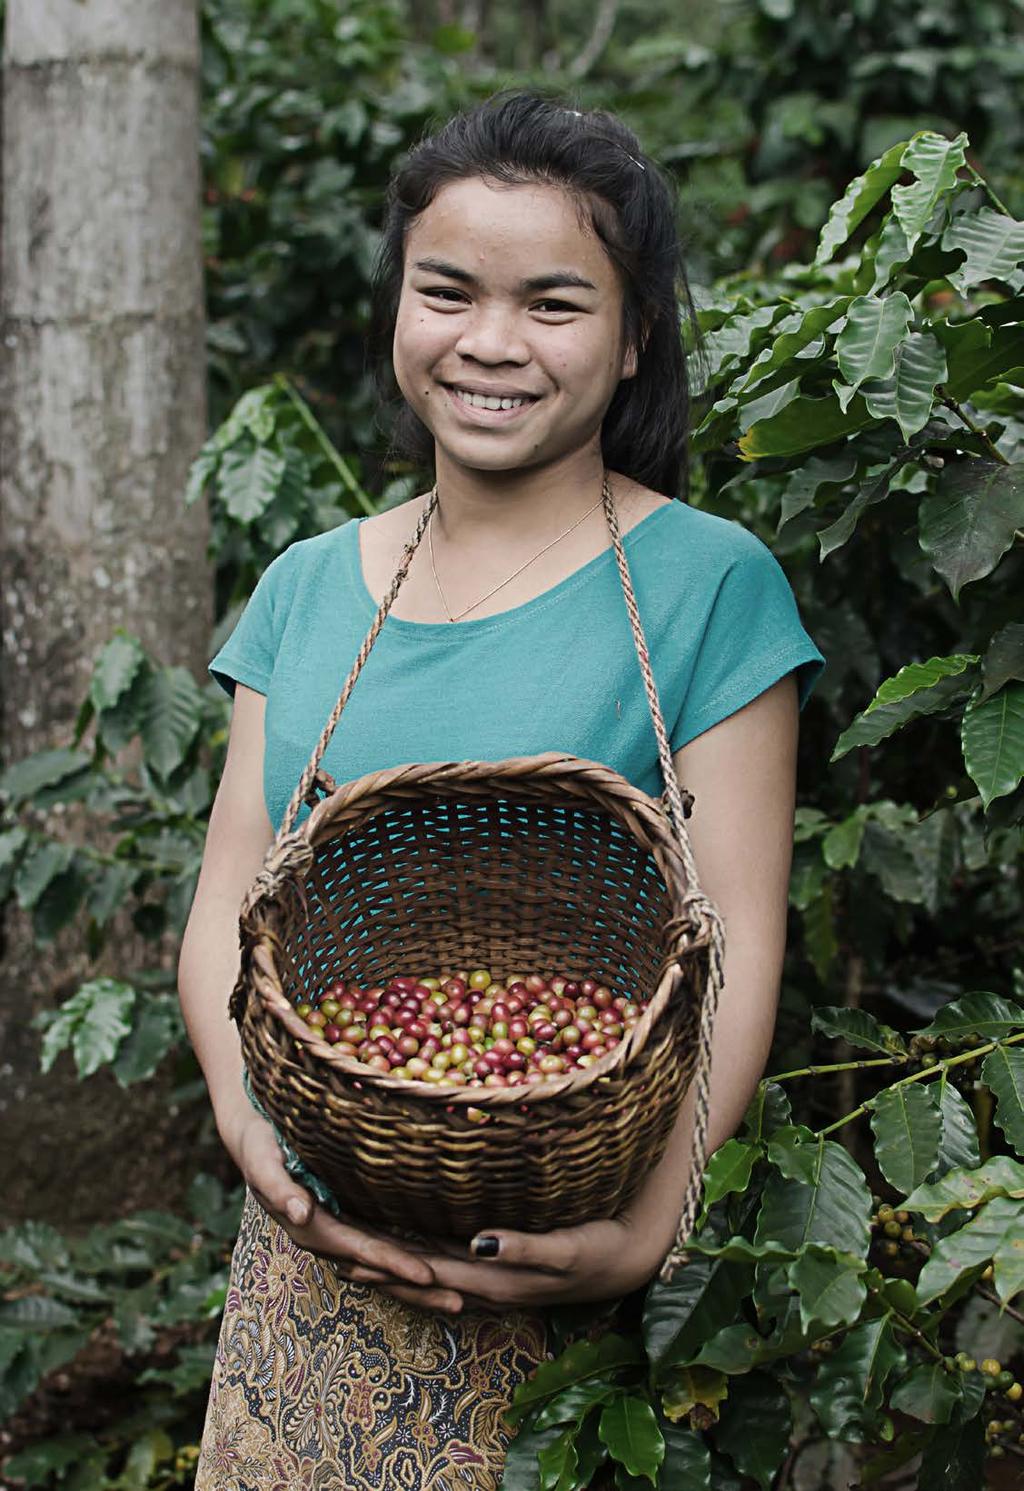 FARMER S COFFEE Farmer s Coffee er basert på 100 % Arabica-bønner. Dyrket i henhold til prinsippene for rettferdig handel og Fairtrade-merket. Kaffen kjennetegnes med god fylde og fin syrlighet.